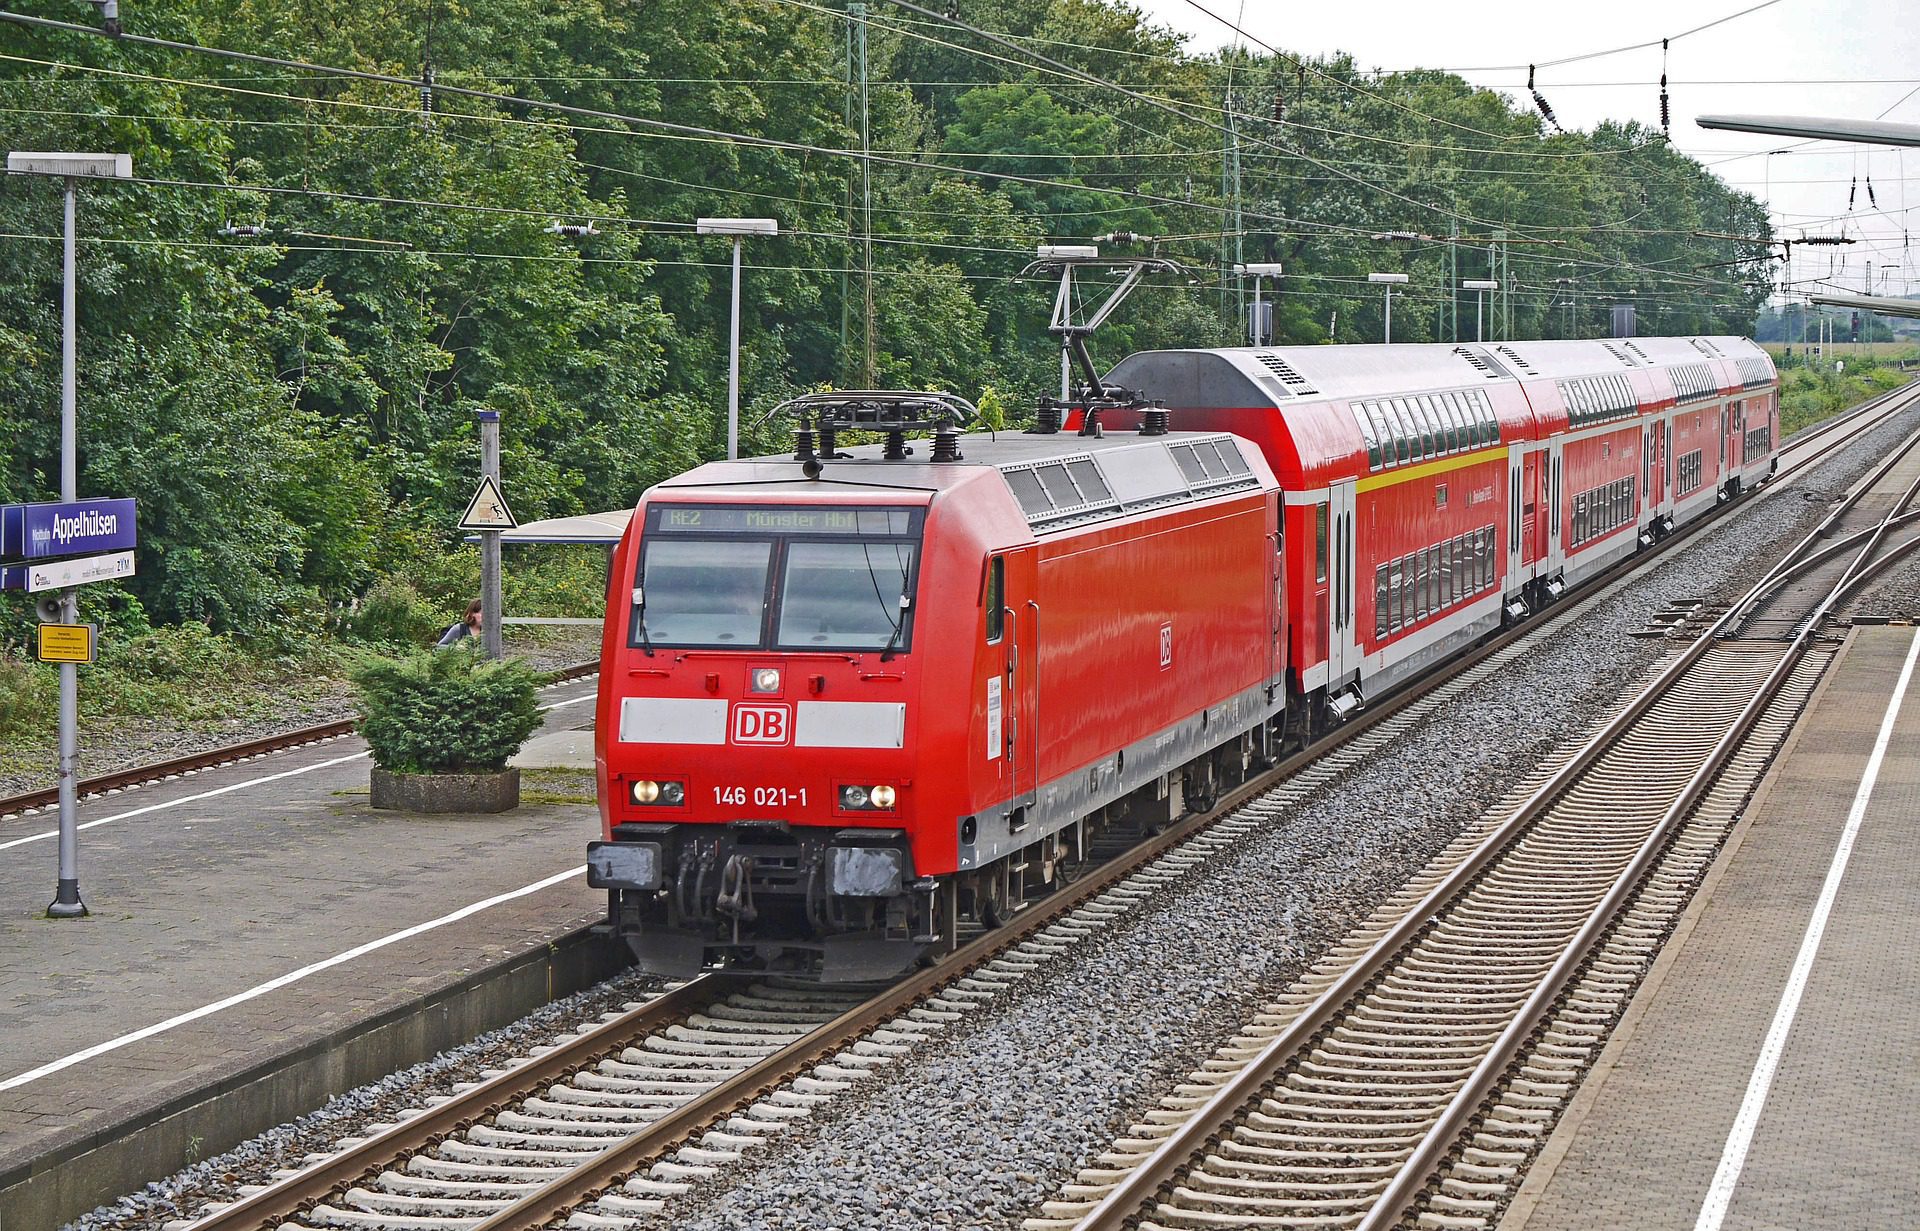 O RER (trem) também é uma forma bem rápida e eficiente de se deslocar